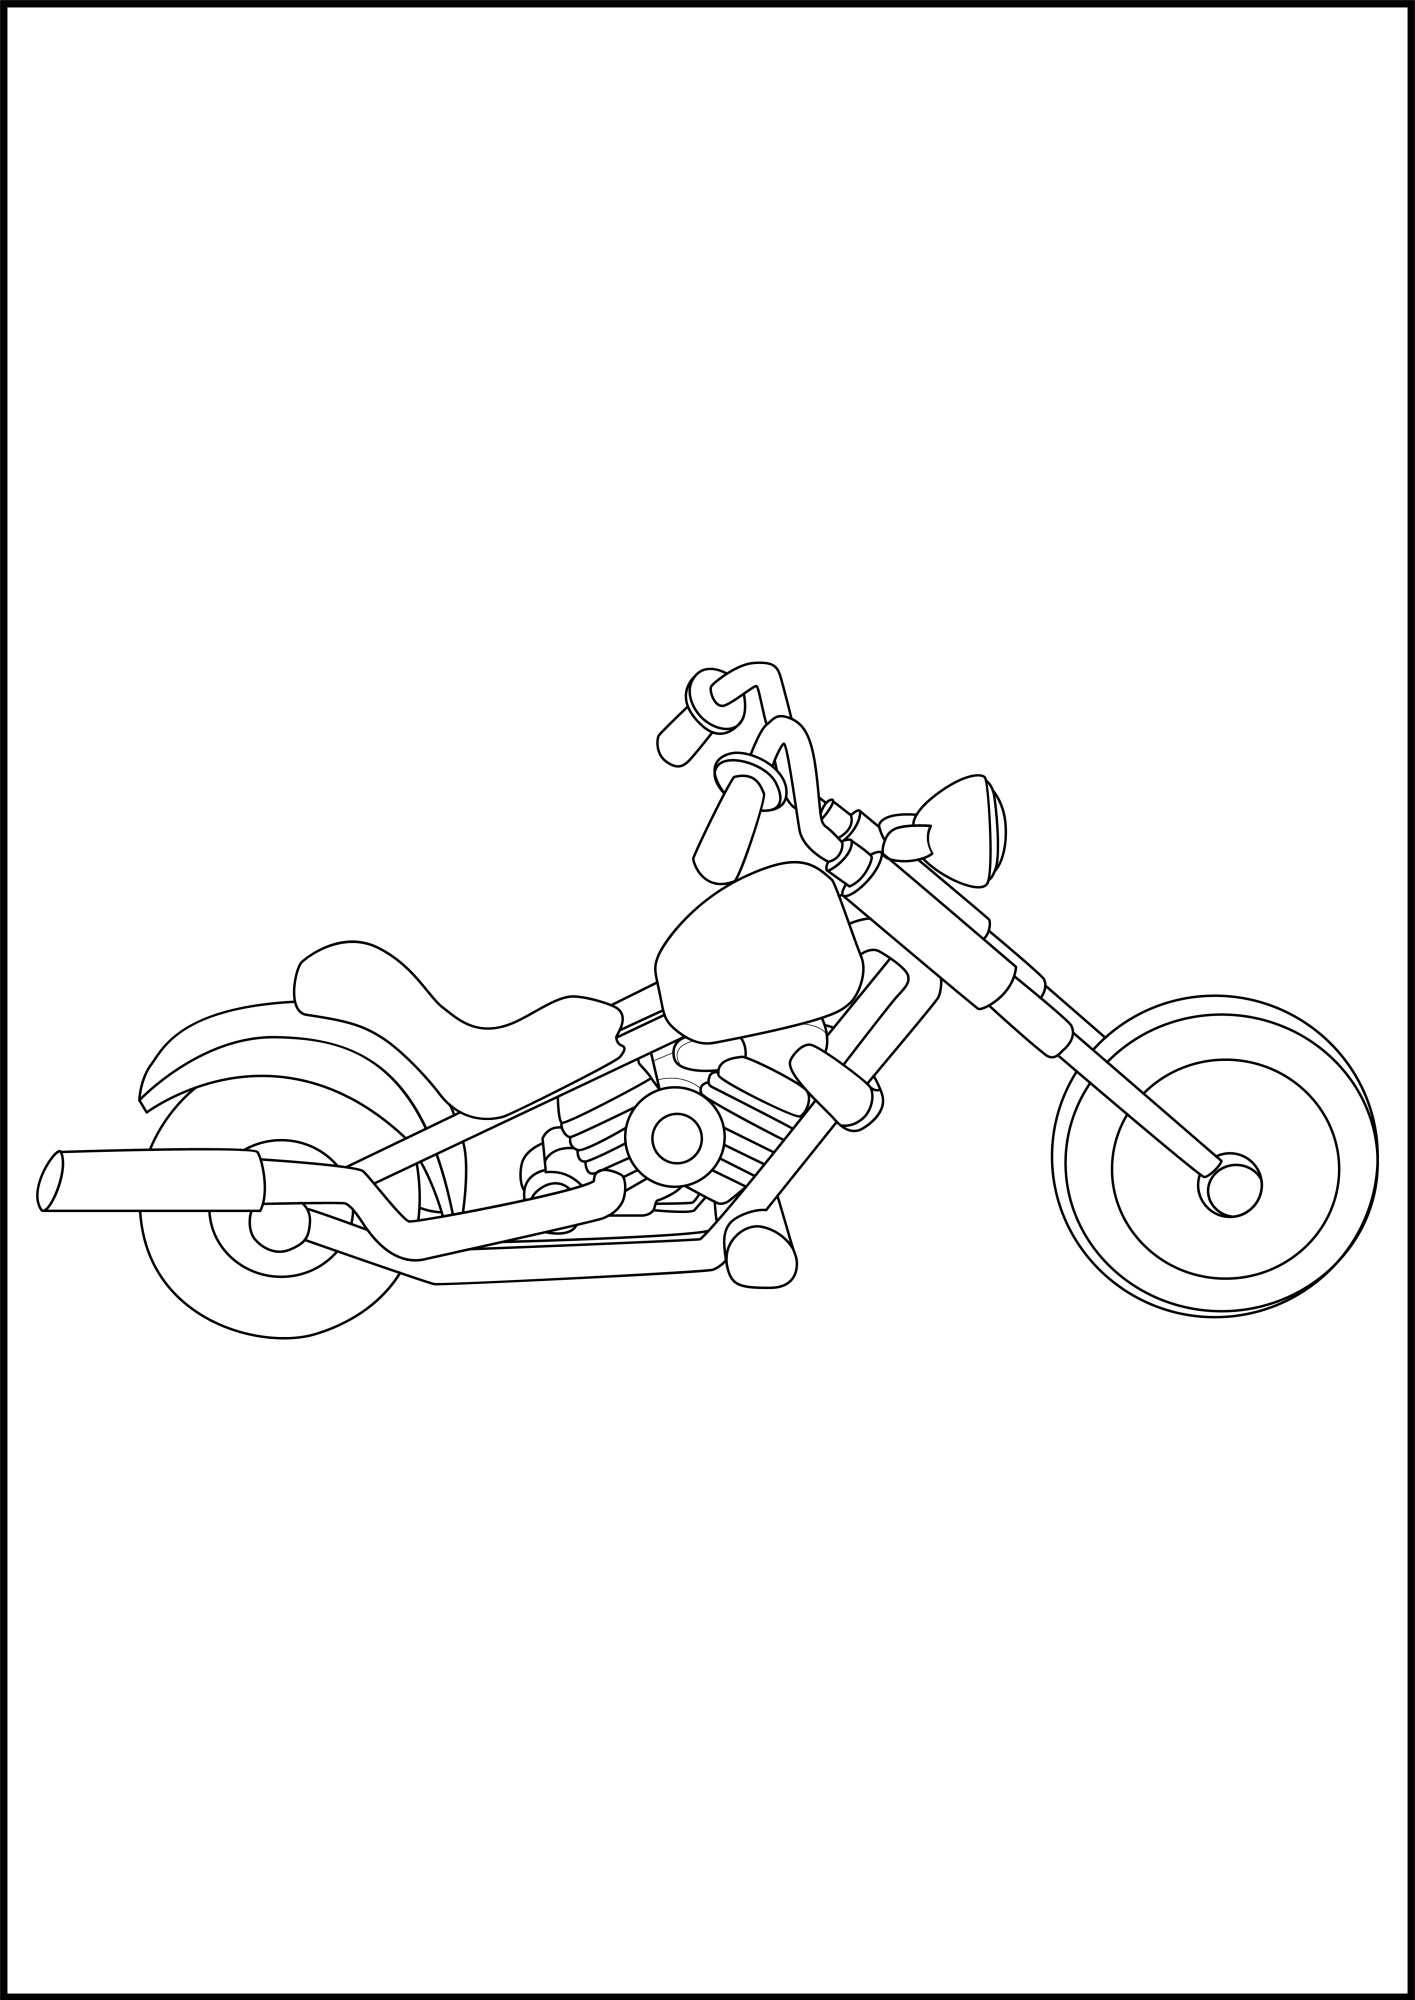 Раскраска для детей: мотоцикл «Рвущий ветер»